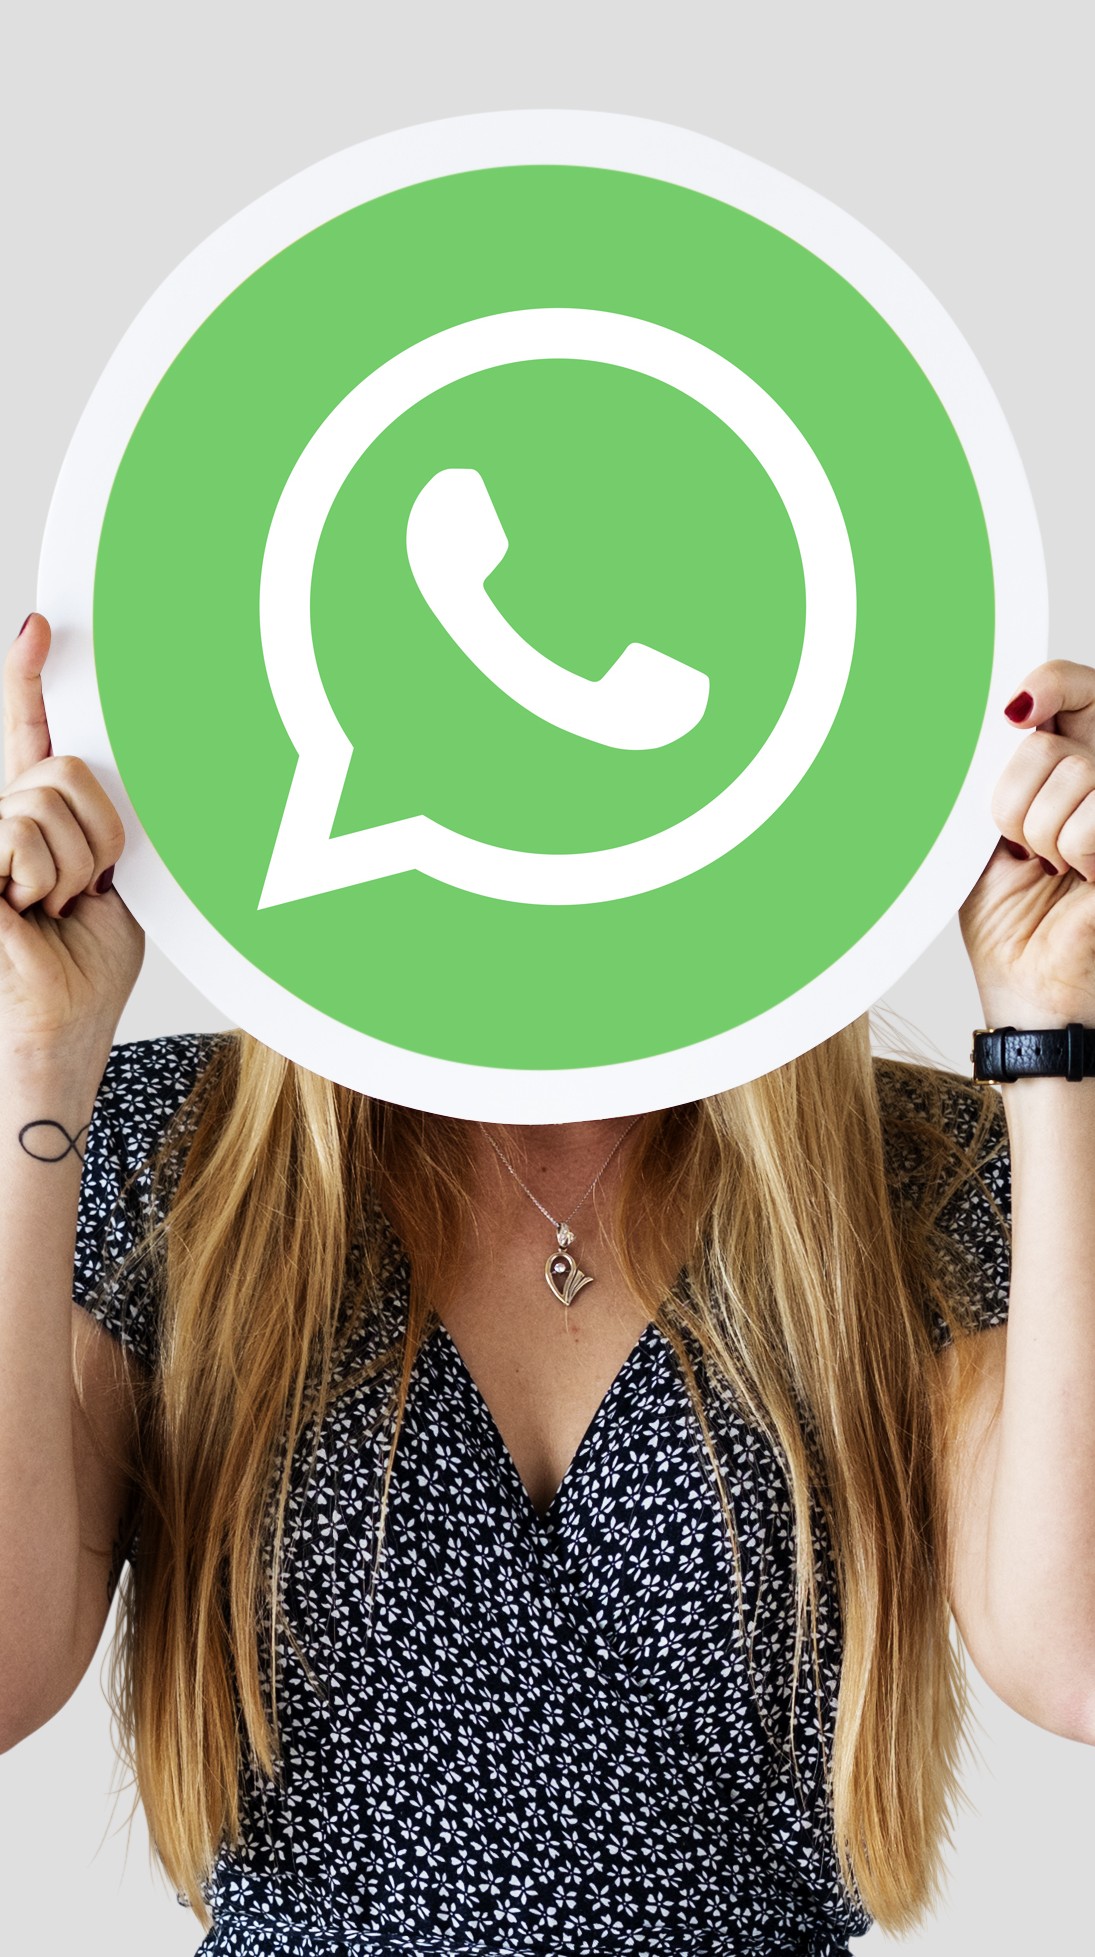 Envia telefone de amigos pelo WhatsApp para trollar? Você pode ser multado  - 05/11/2019 - UOL TILT